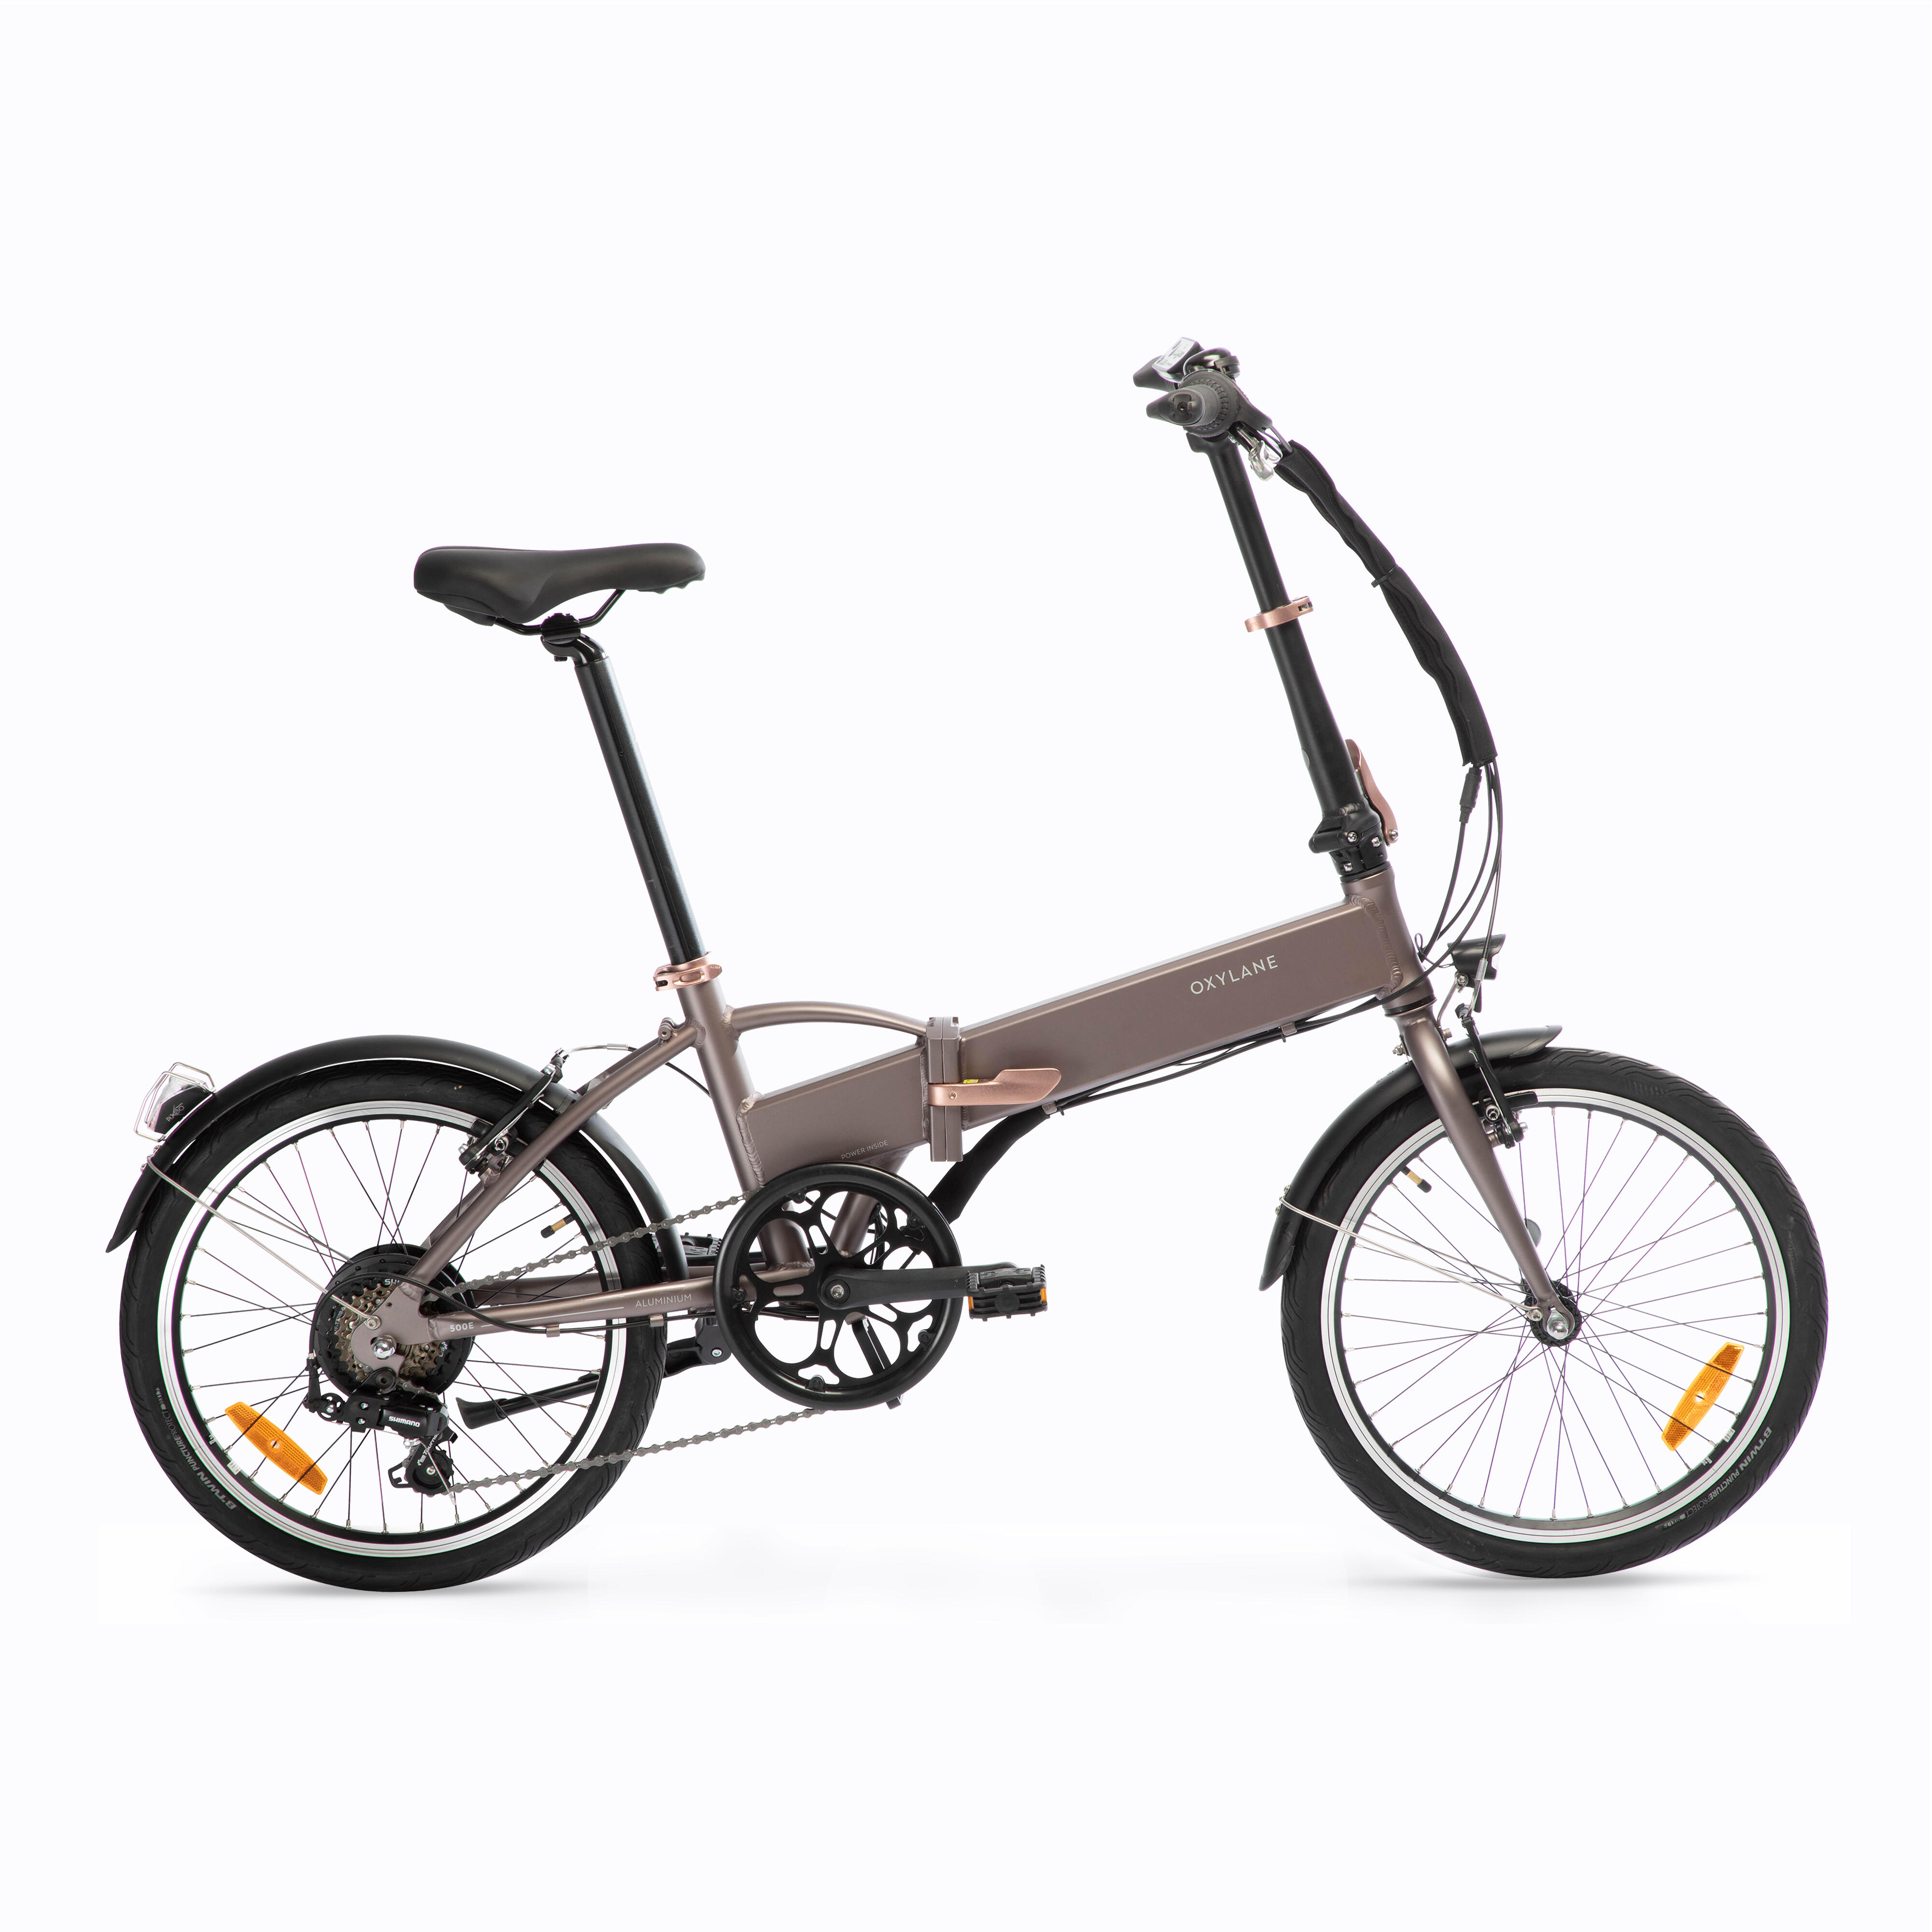 Bicicletă pliabilă cu asistență electrică TILT 500 E BTWIN BTWIN